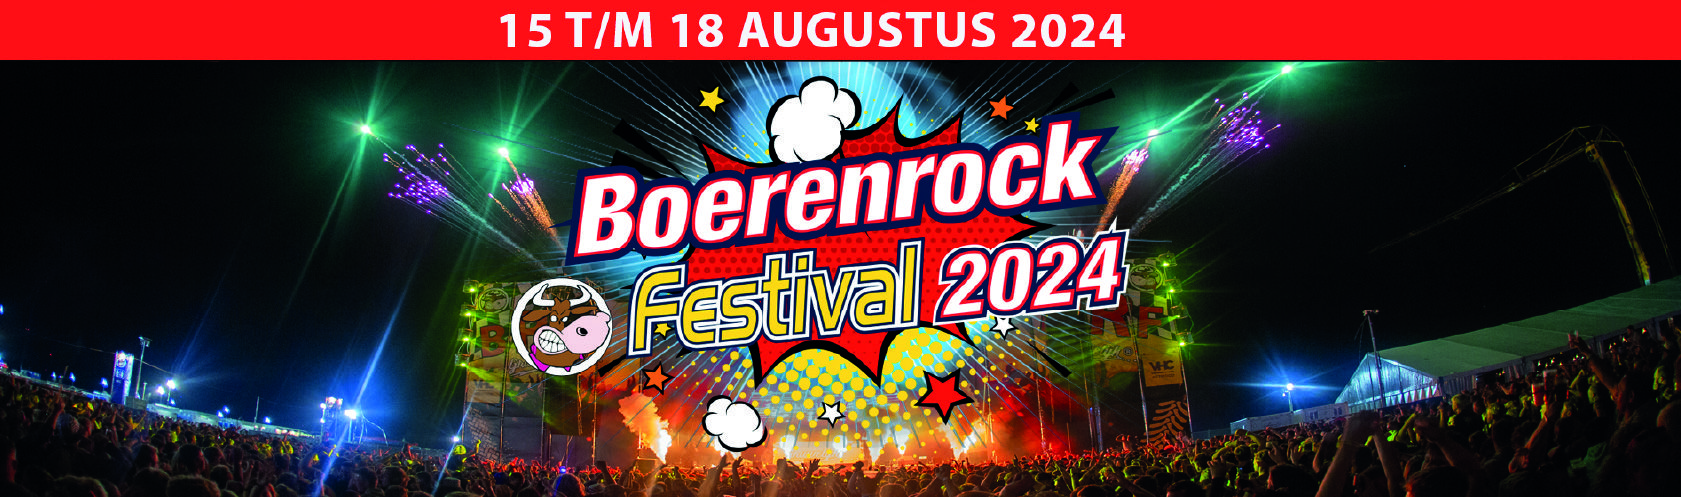 Boerenrock banner_large_desktop